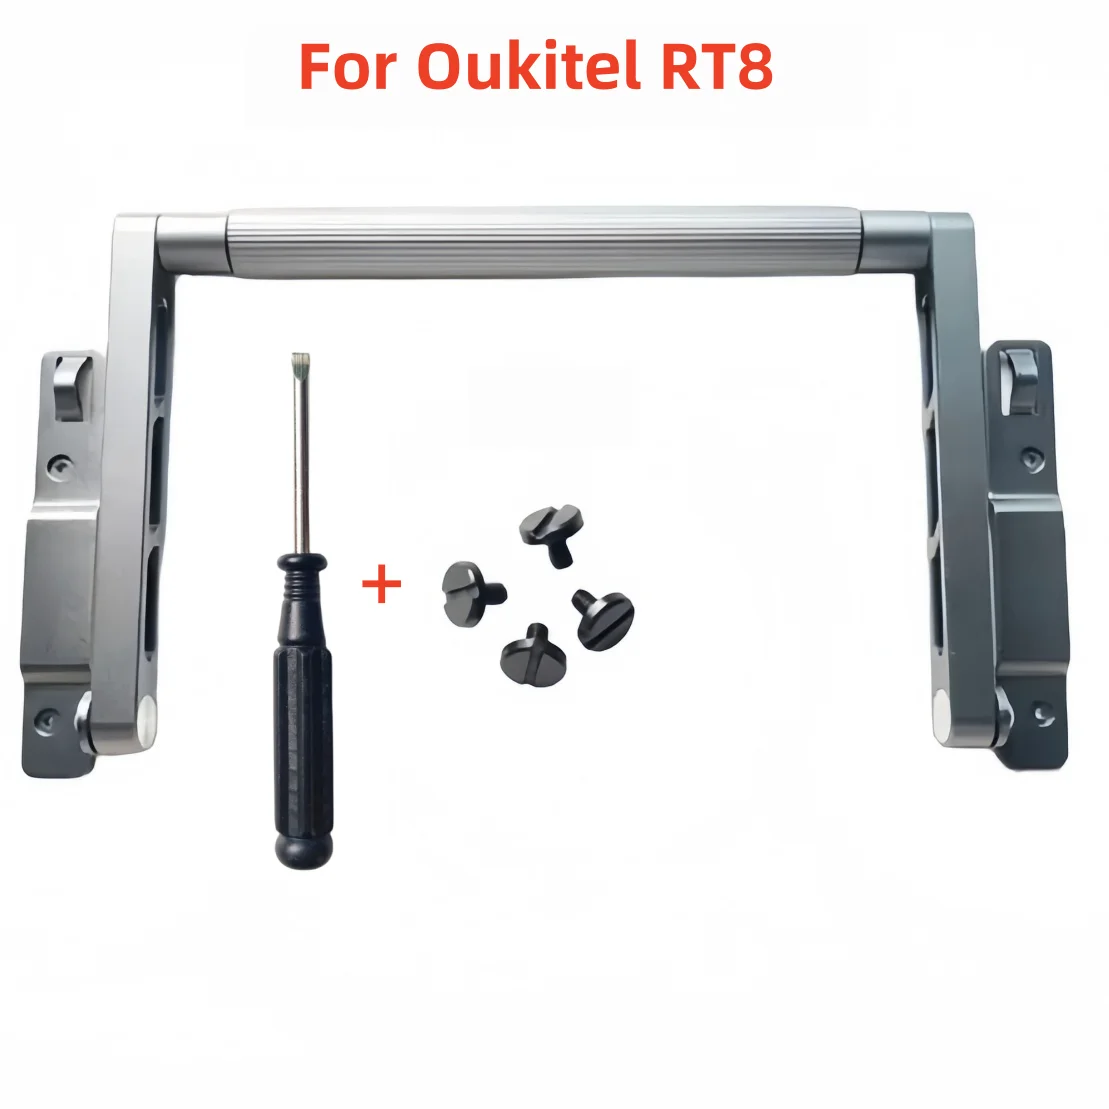 

Новинка, оригинальная Роскошная Противоударная Подставка для планшета из алюминиевого сплава с инструментами и винтами (набор из 4 шт.) для Oukitel RT8, прочный планшетный ПК